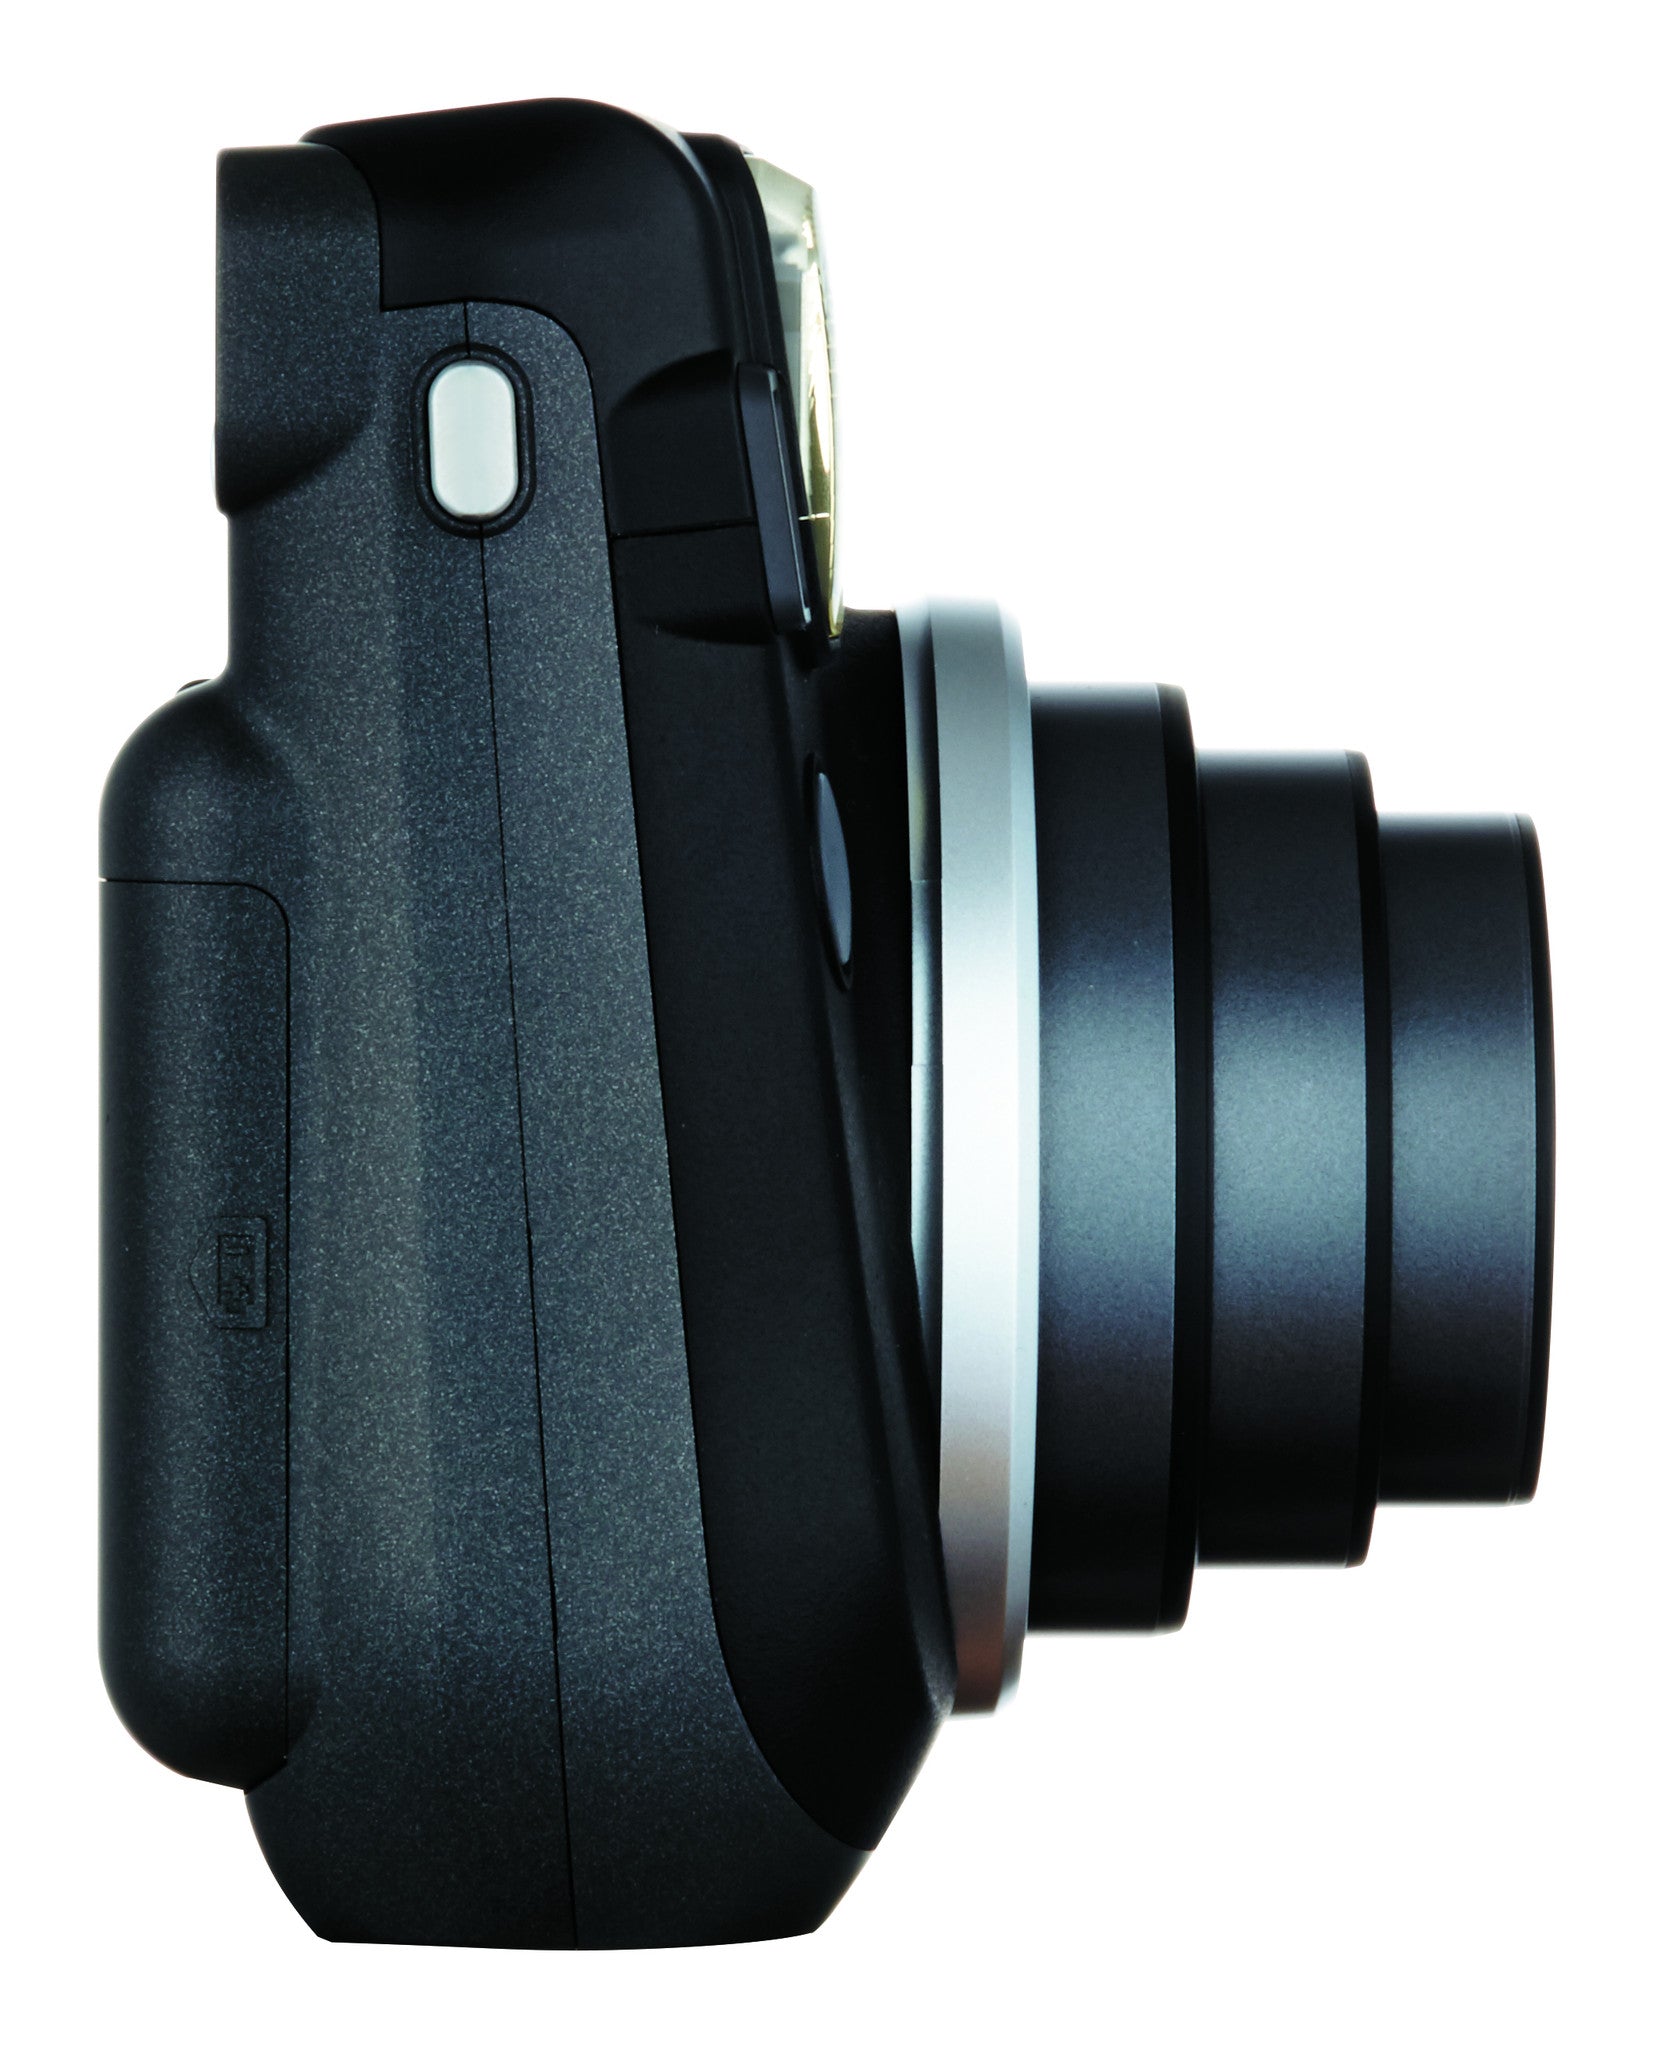 Fujifilm INSTAX Mini 70 Instant Film Camera (Midnight Black)